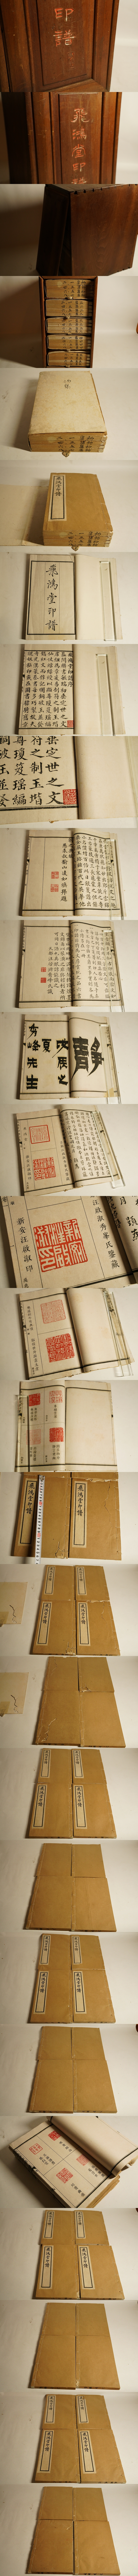 飛鴻堂印譜有正書局石印本希少版全20冊揃中国美術篆刻唐本漢籍印譜